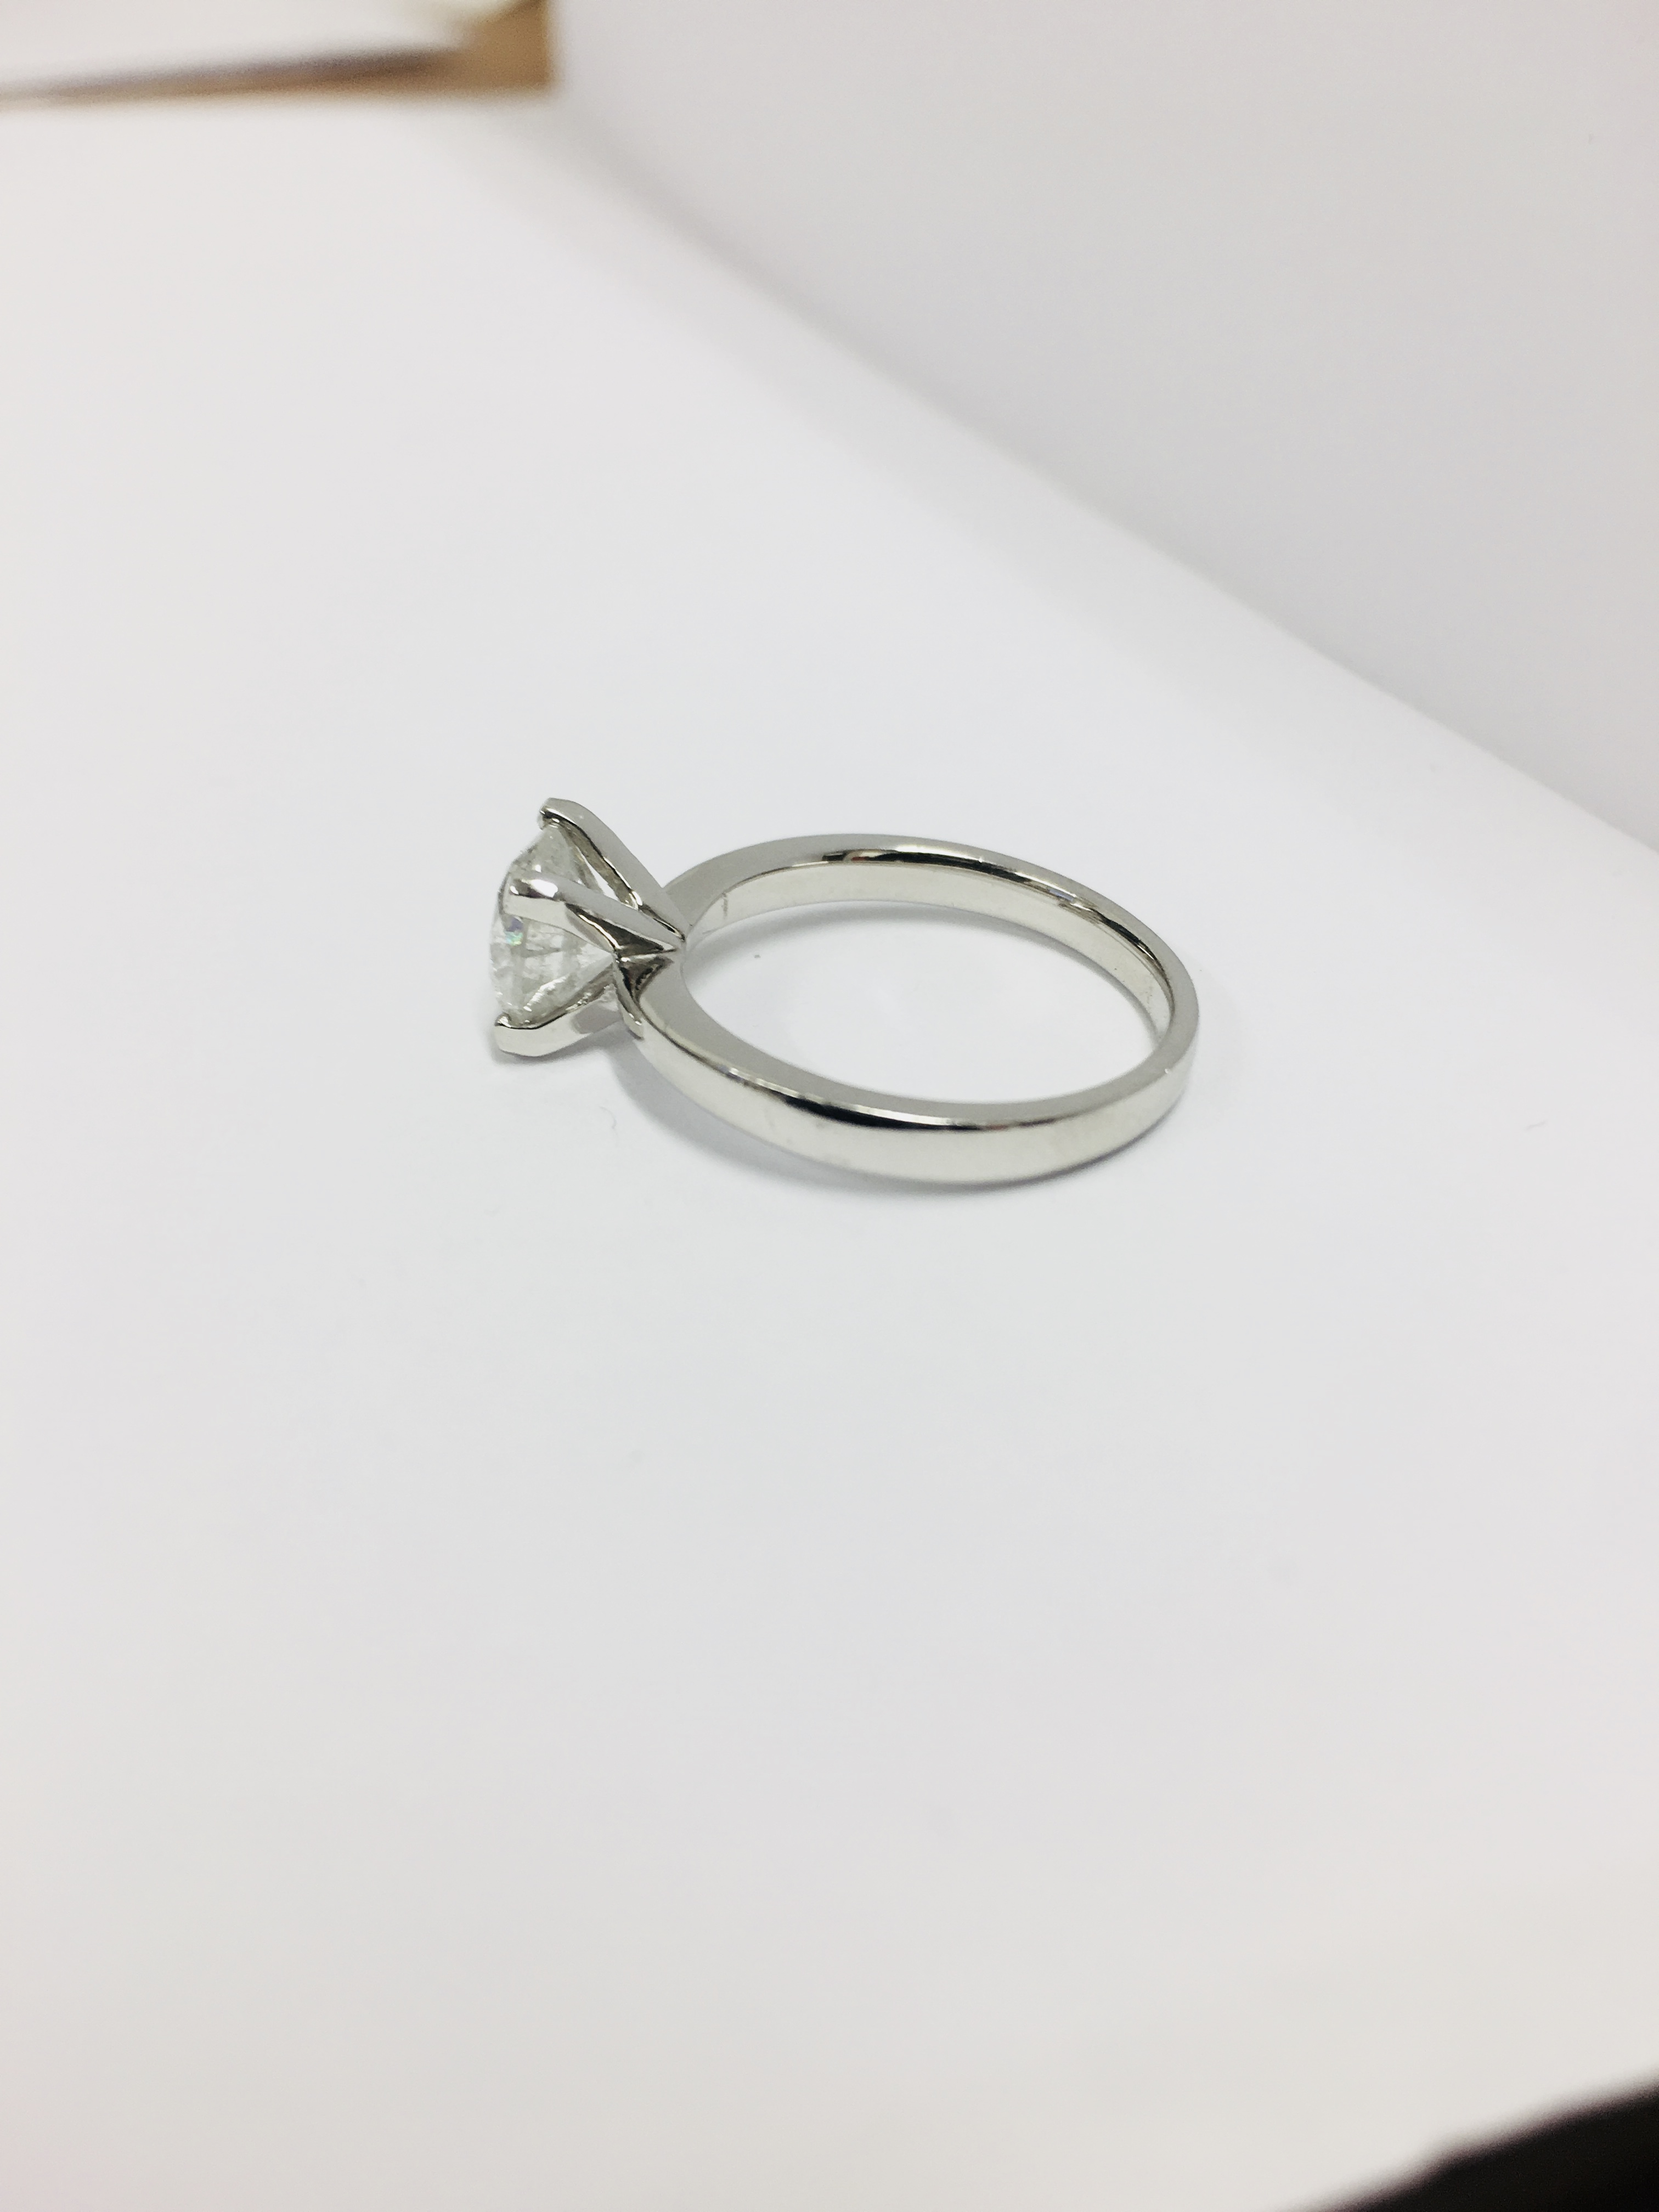 1.50ct diamond solitaire ring set in platinum - Image 12 of 35